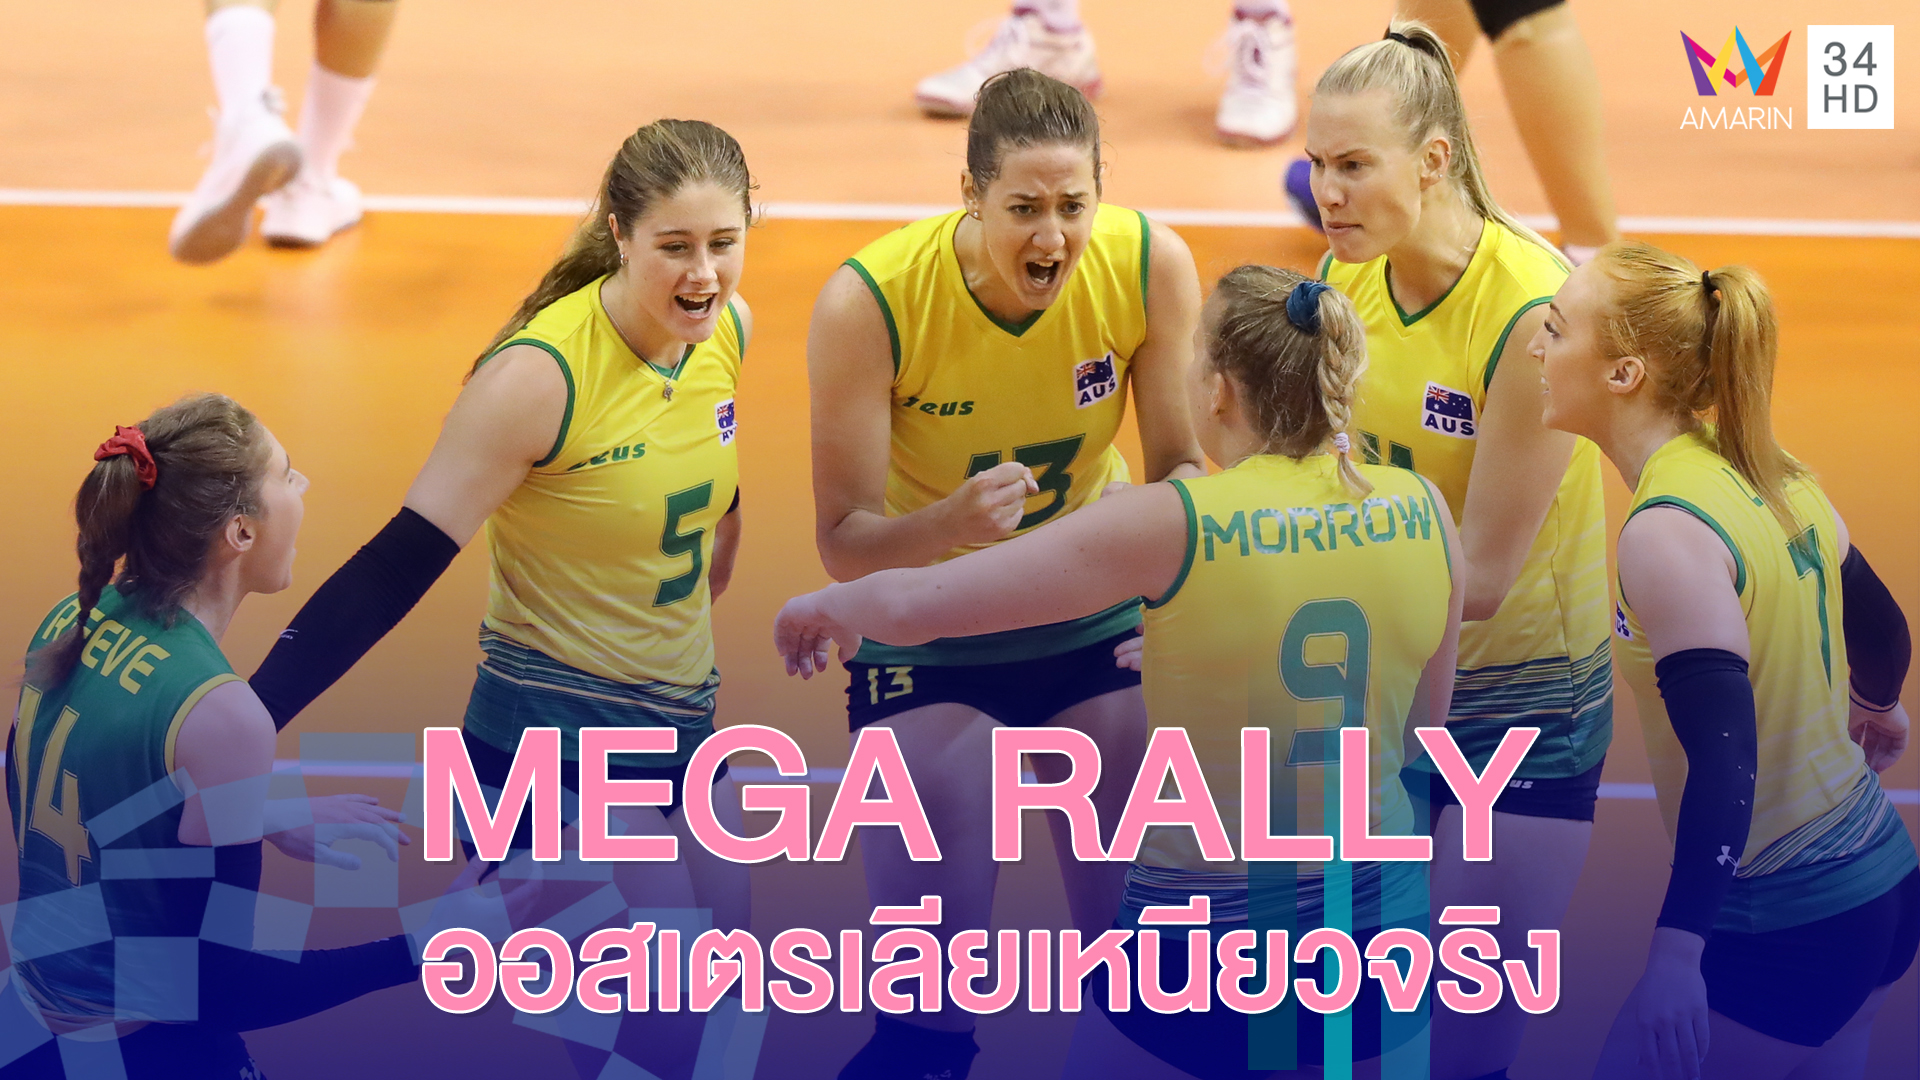 MEGA RALLY ออสเตรเลียเหนียวจริง | วอลเลย์บอลหญิง รอบคัดเลือก โตเกียว 2020 | 9 ม.ค.63